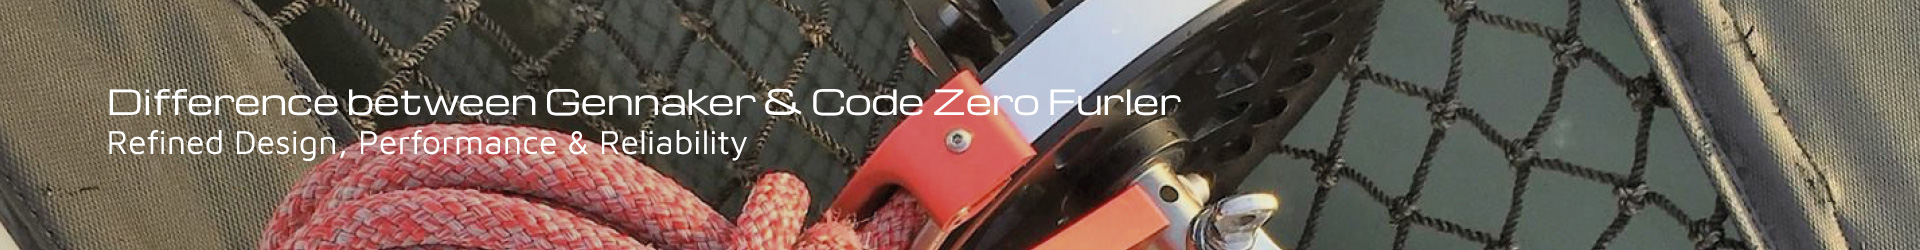 ronstan code zero furlers